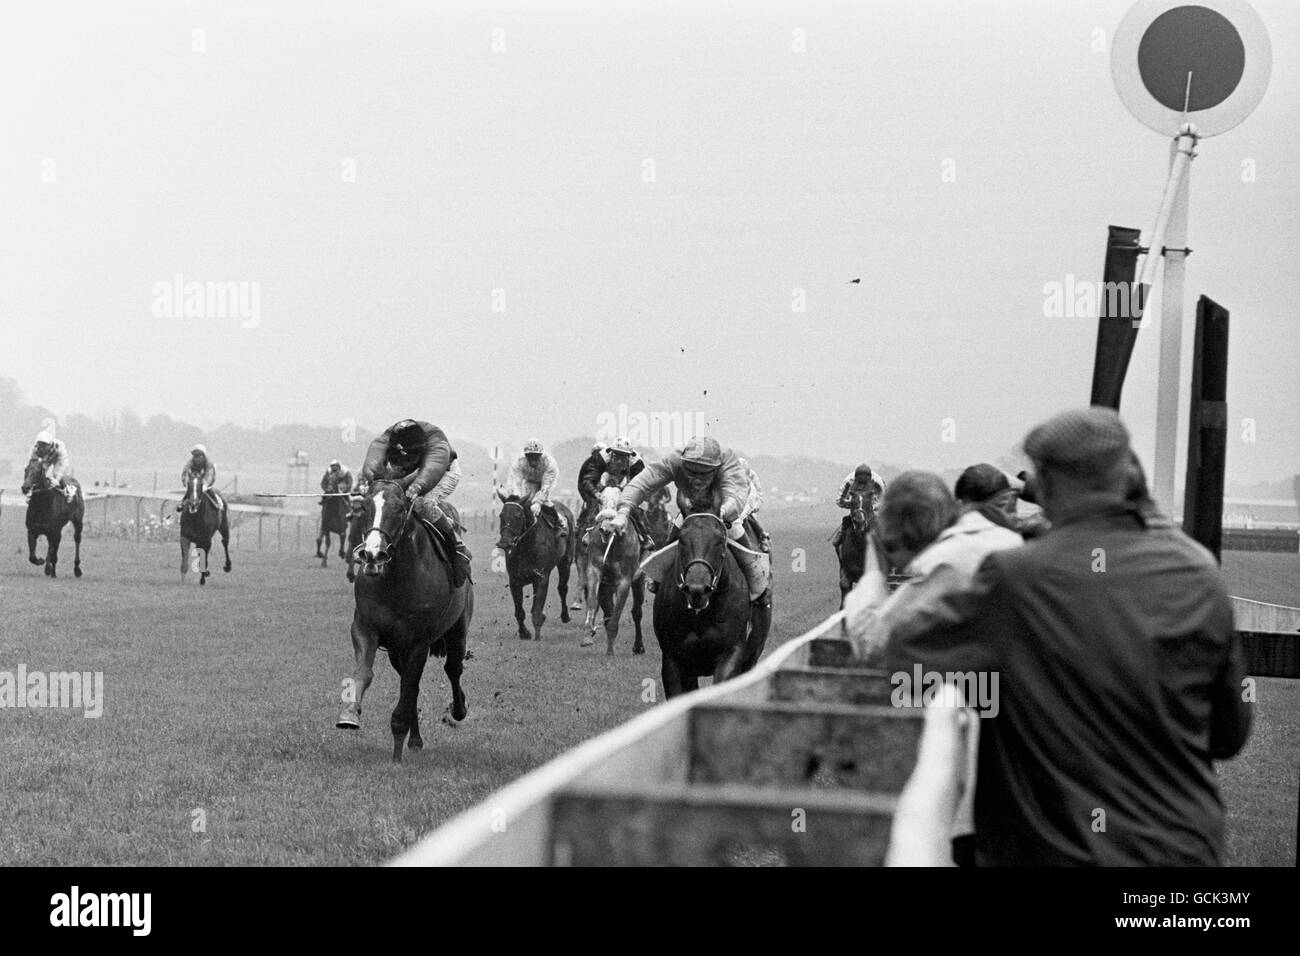 Corse di cavalli - il Theale Maiden Stakes - Ippodromo di Newbury. Willie Carson (a sinistra) porta Rhyme Royal alla vittoria seguita da Pat Eddery su Persepolis Foto Stock